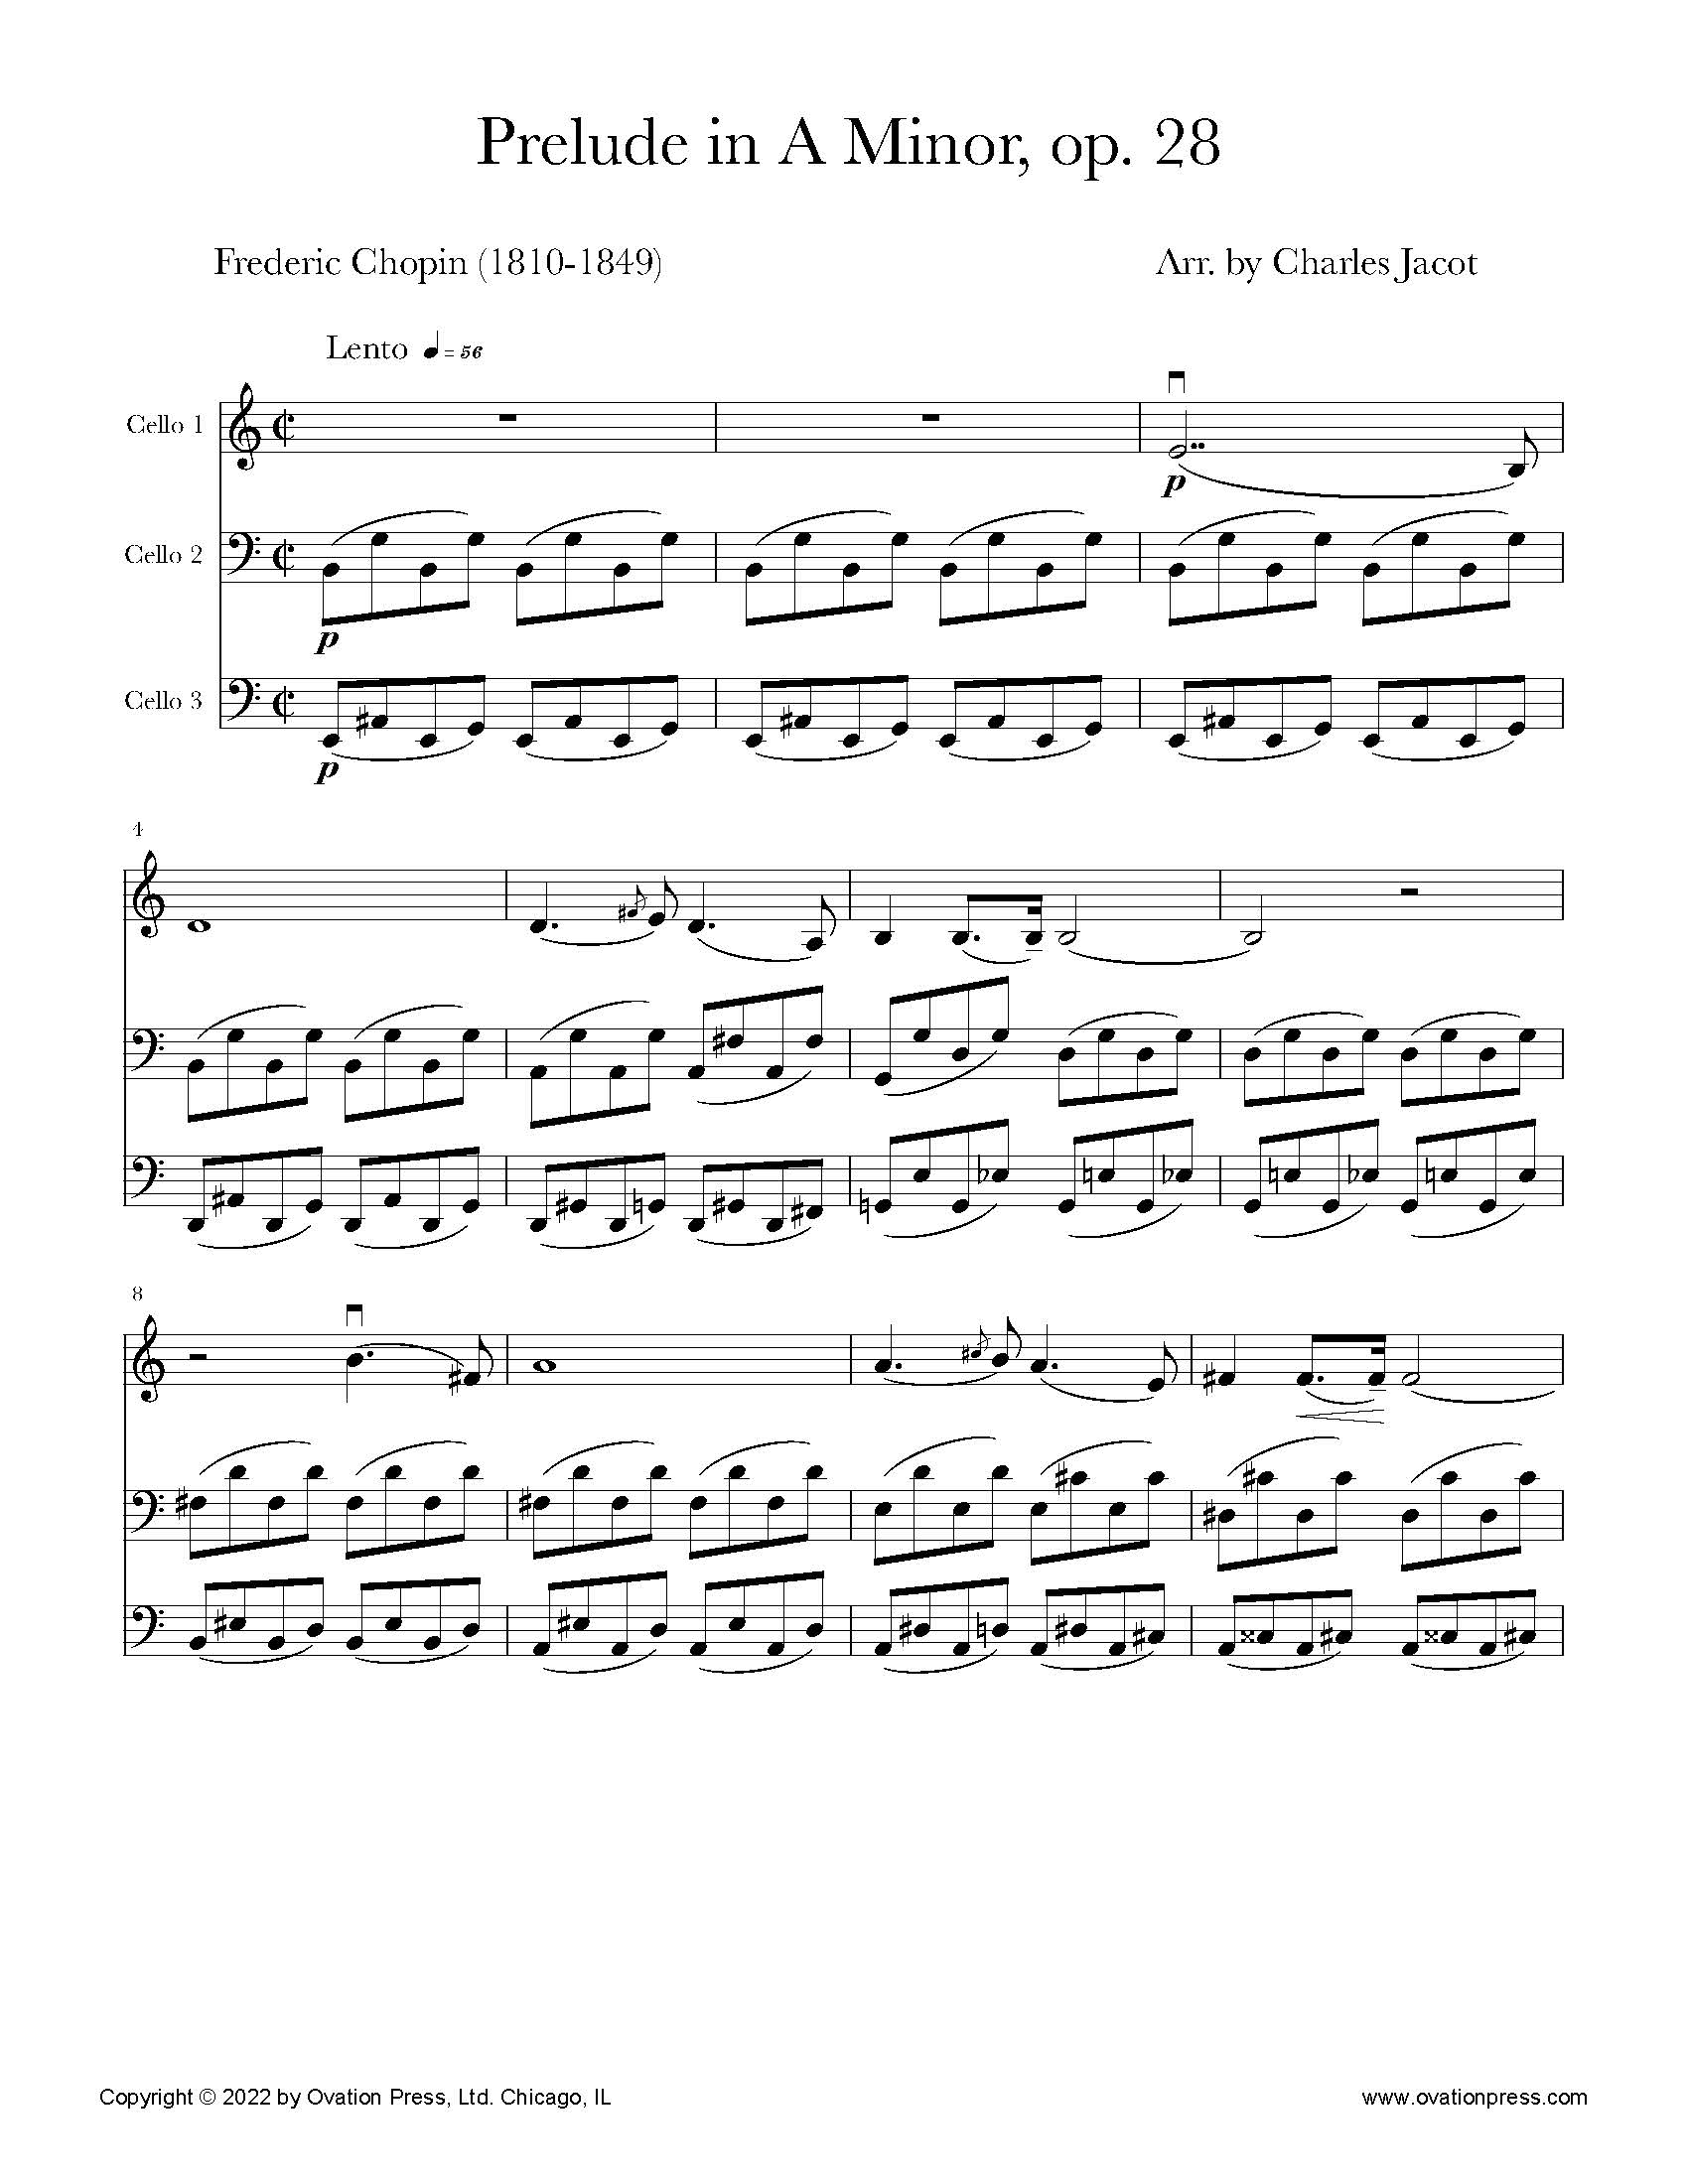 Chopin Five Preludes Op. 28 (for Cello Trio/Quartet)